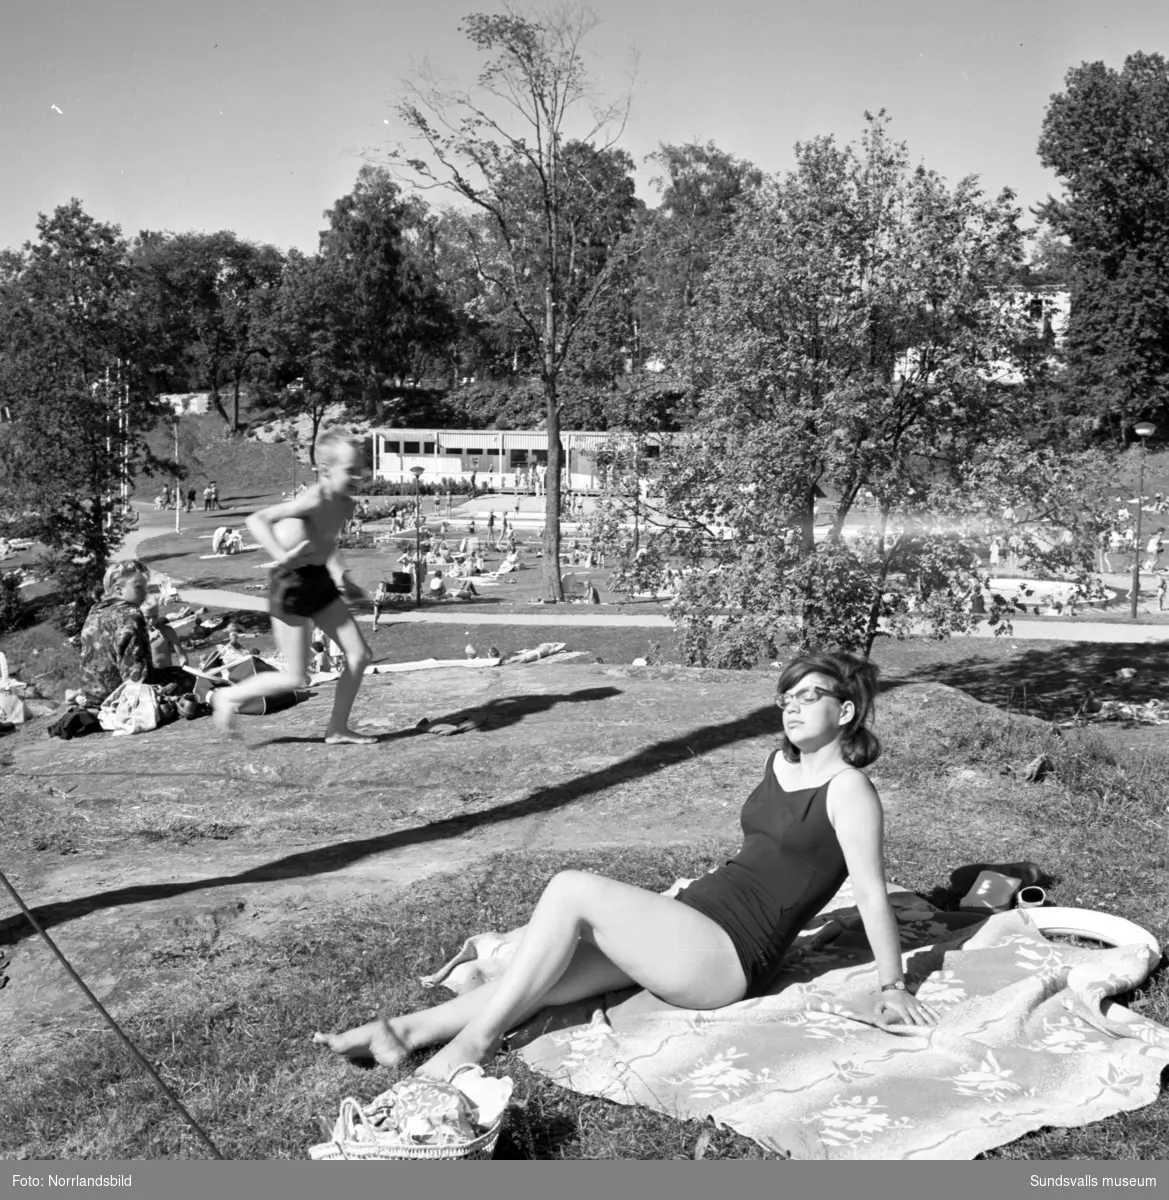 I nuvarande Fagerdalsparken fanns fram till början av 2000-talet ett friluftsbad, på relativt bekvämt promenadavstånd för semesterfirande Sundsvallsbor. Badet låg på platsen där grosshandlare Nils Wikström, en av de första träpatronerna, hade sitt sommarställe Villa Fagerdal  som byggdes 1865 vid Sidsjöbäcken. Villan stod kvar fram till 1950-talet och 1959 anlade Sundsvalls stad Fagerdalsbadet,  parken rustades upp och blev ett populärt tillhåll sommartid, inte minst för barnen. Hösten 2002 revs badet och groparna fylldes igen, men parken finns kvar – en rest av Villa Fagerdals trädgård.